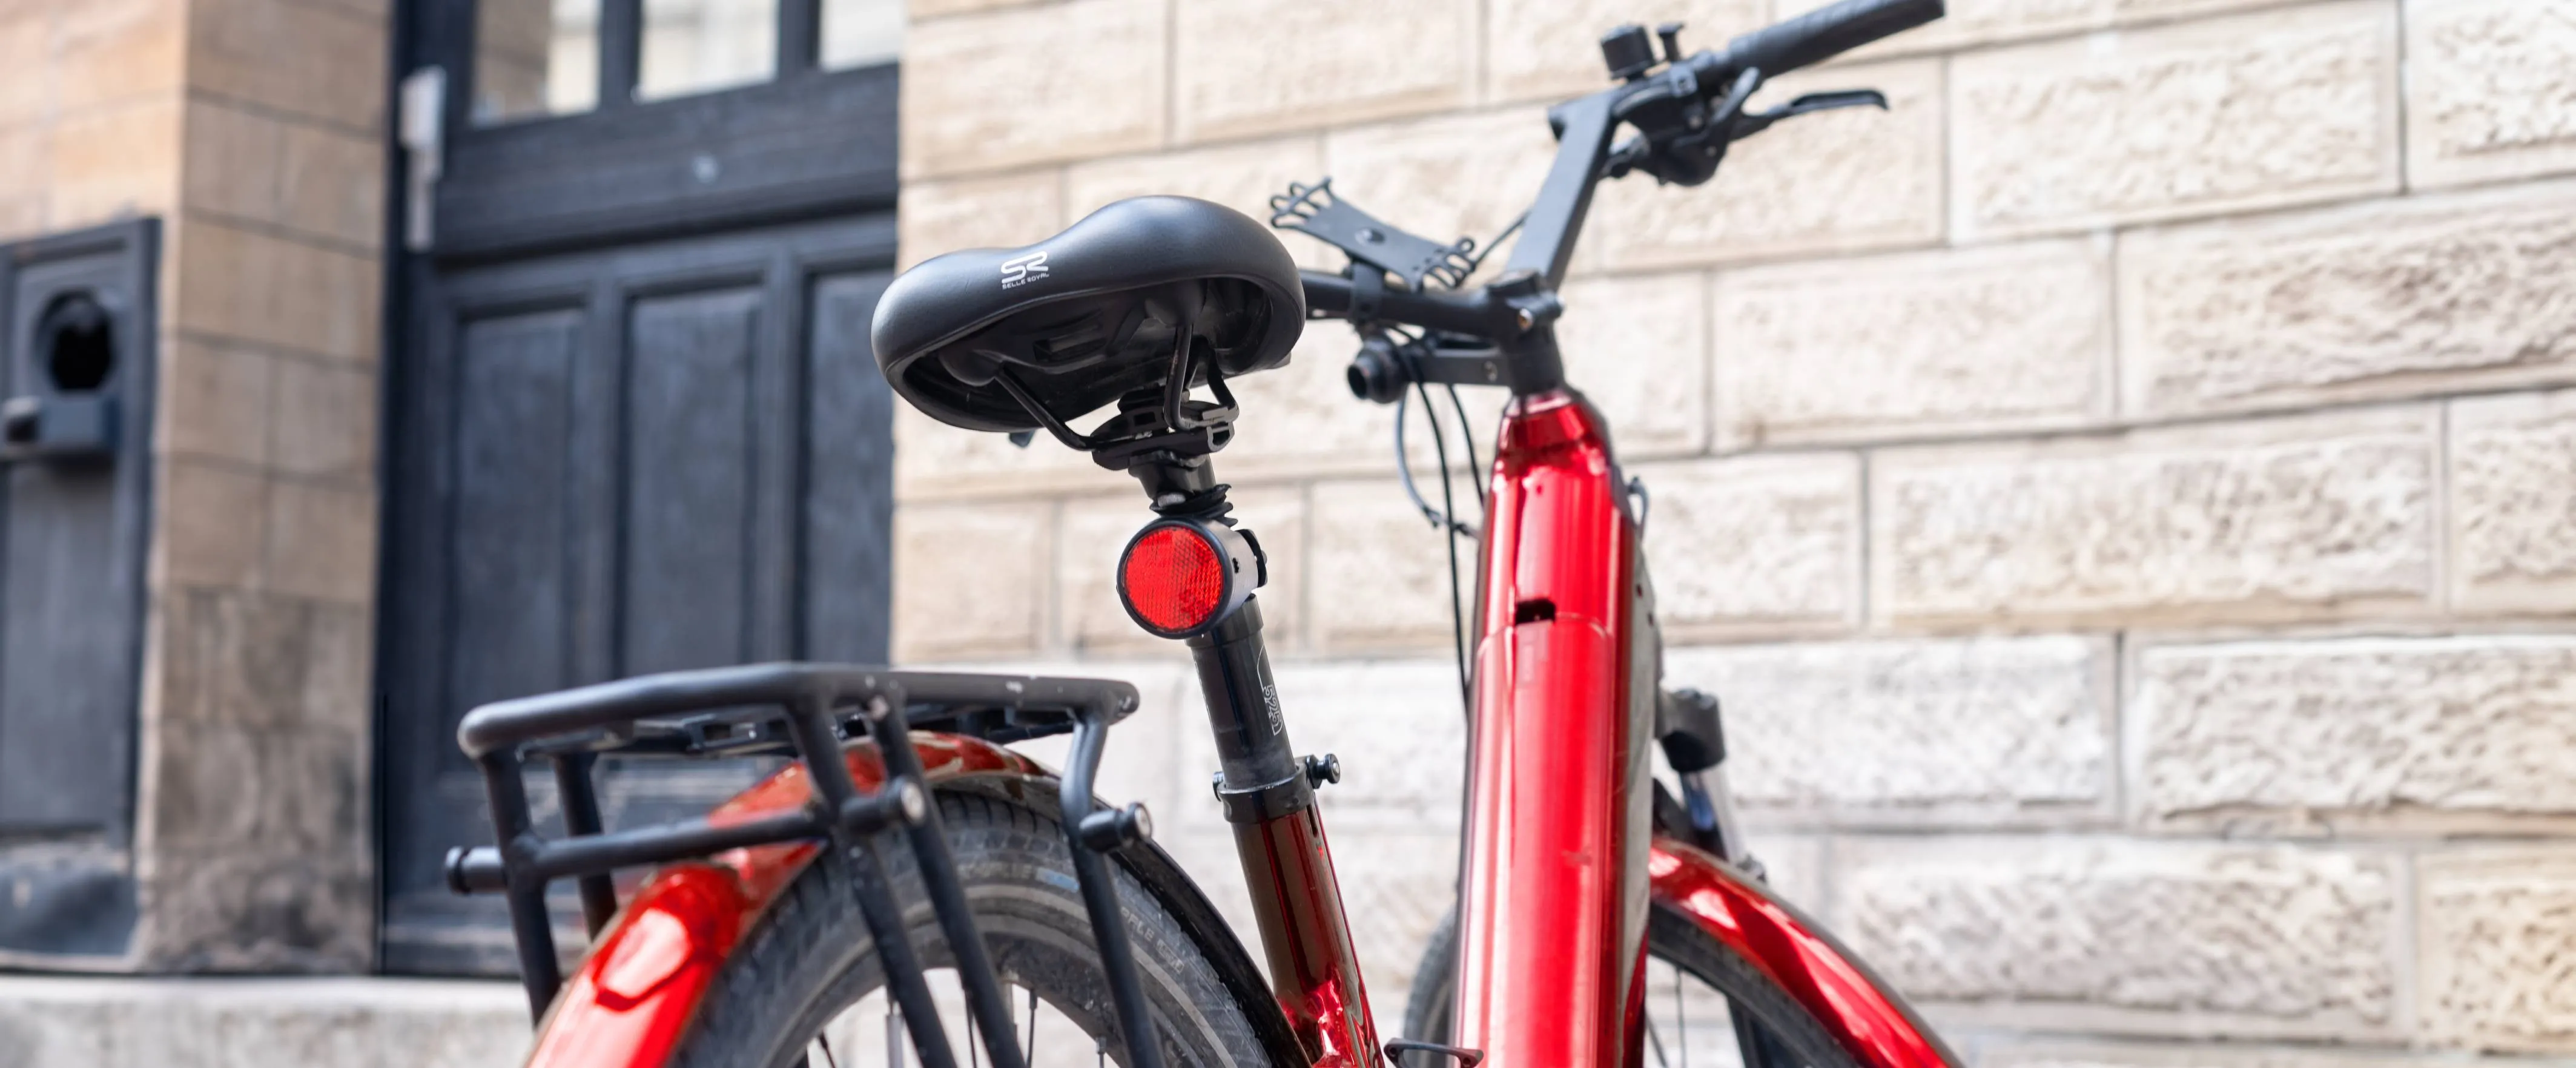 Localizzatore GPS per bici - Invoxia - Bicicletta